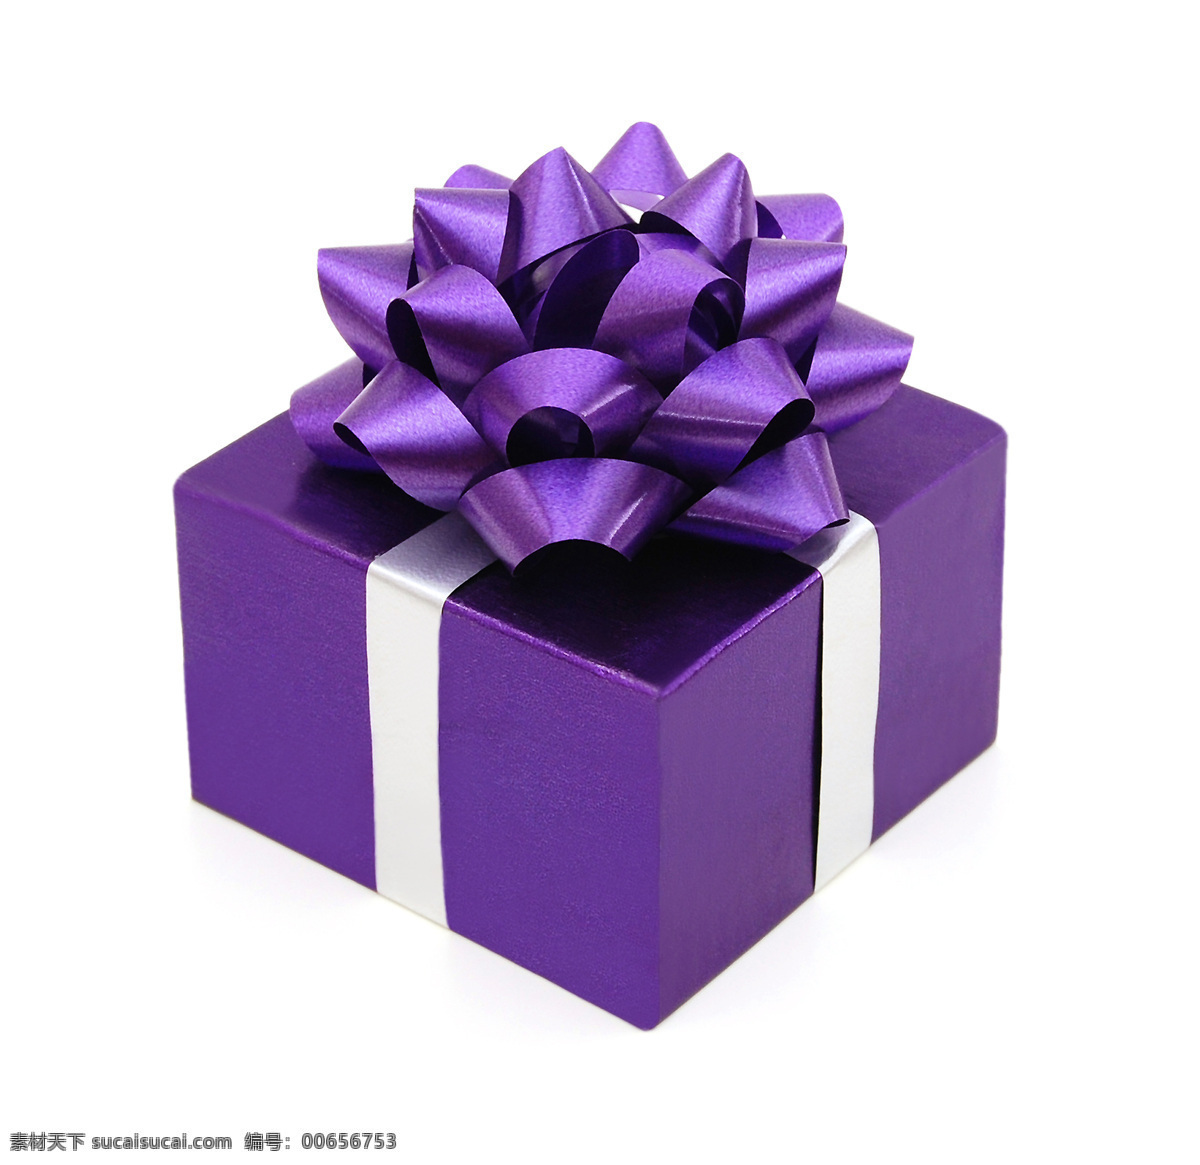 生日礼物礼包 生日礼物 生日礼包 礼品 促销素材 礼盒 新年礼物 其他类别 生活百科 白色